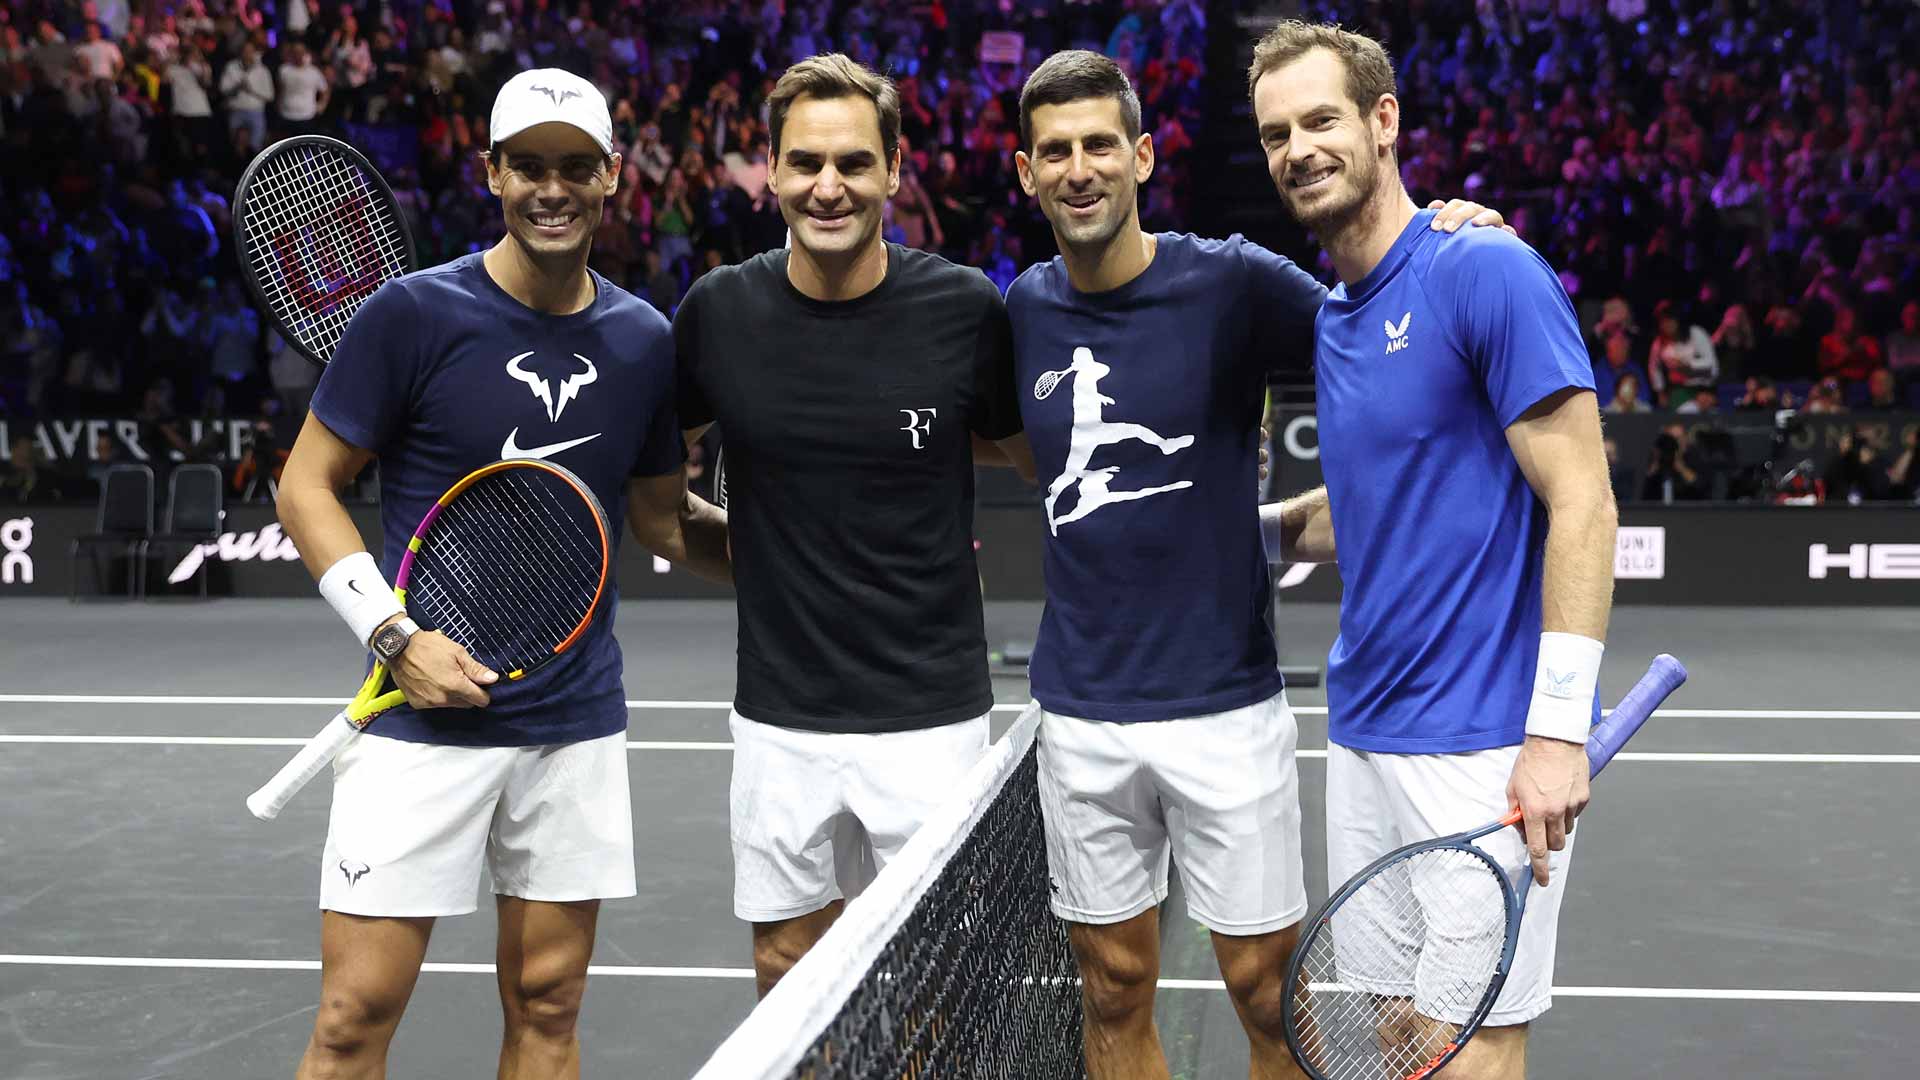 Australian Open, Murray e Nadal si allenano insieme nella Rod Laver Arena (VIDEO)